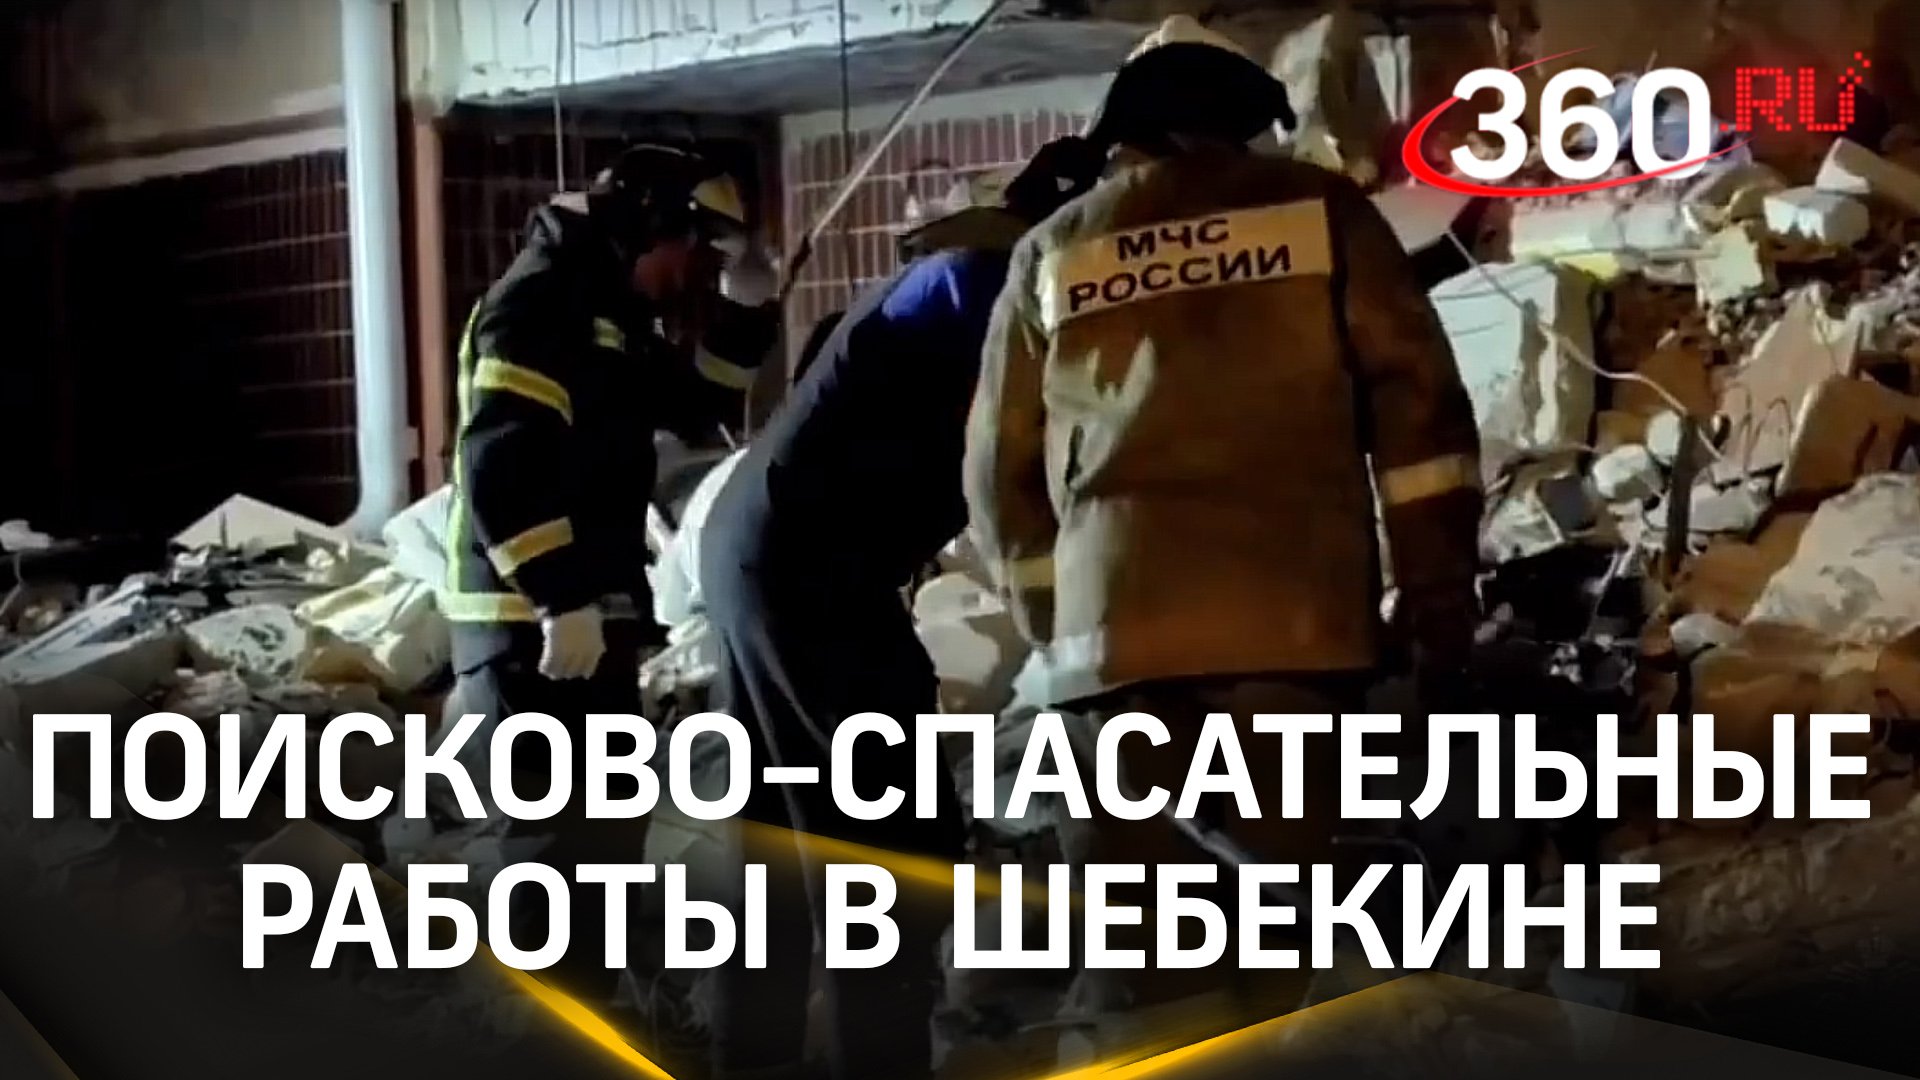 МЧС России: поисково-спасательные работы в Шебекине завершены